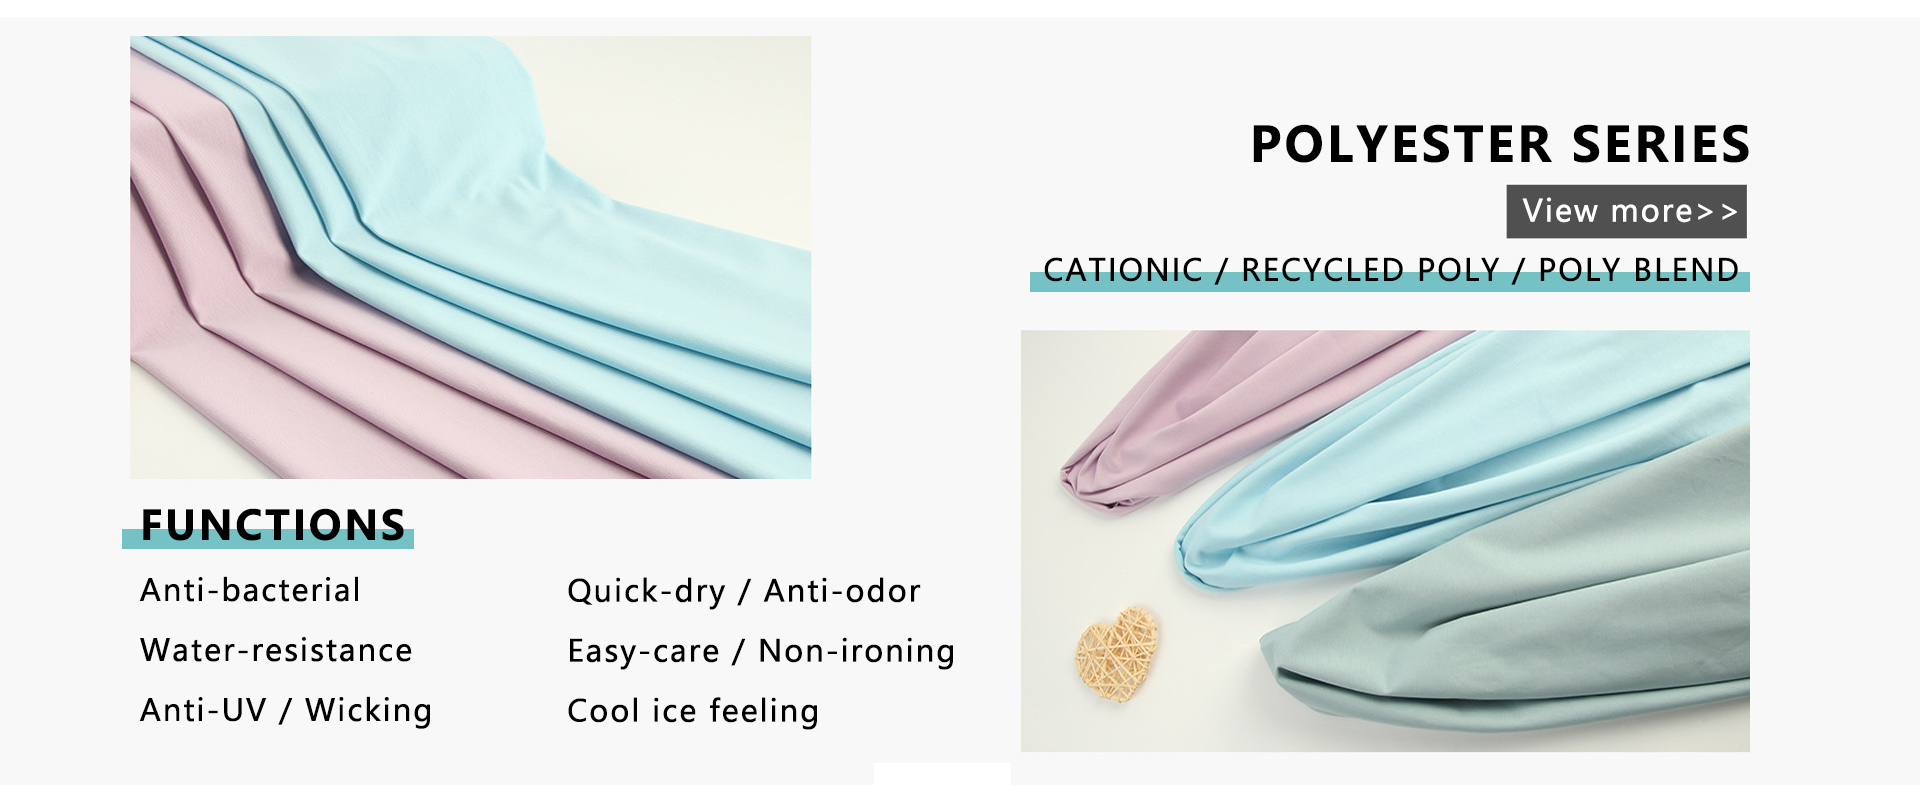 Polyester serisi örgü kumaş, anti-UV, anti-bakteriyel, suya dayanıklıdır.